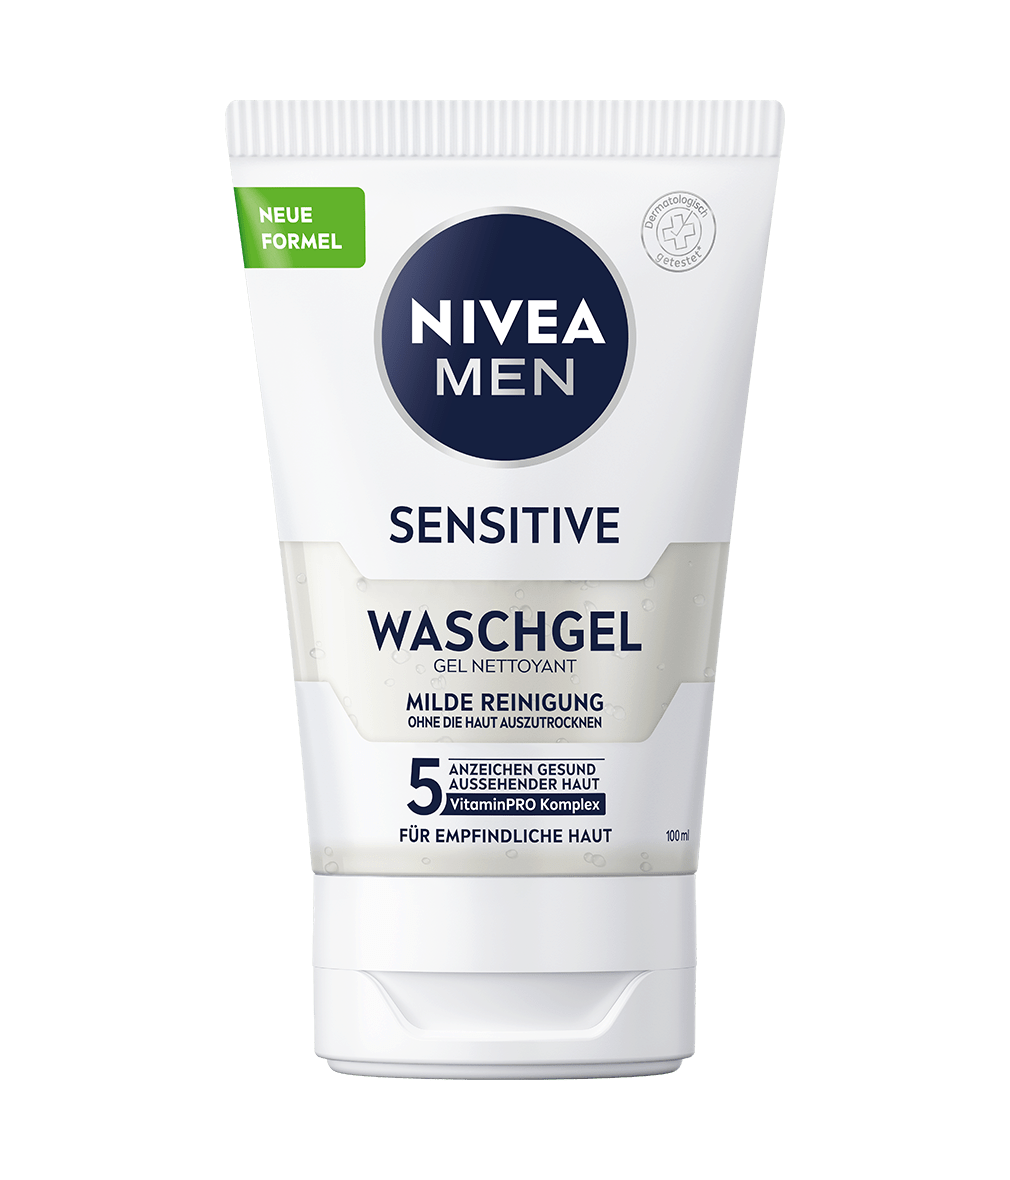 NIVEA MEN Sensitive Waschgel_100ml_Tube